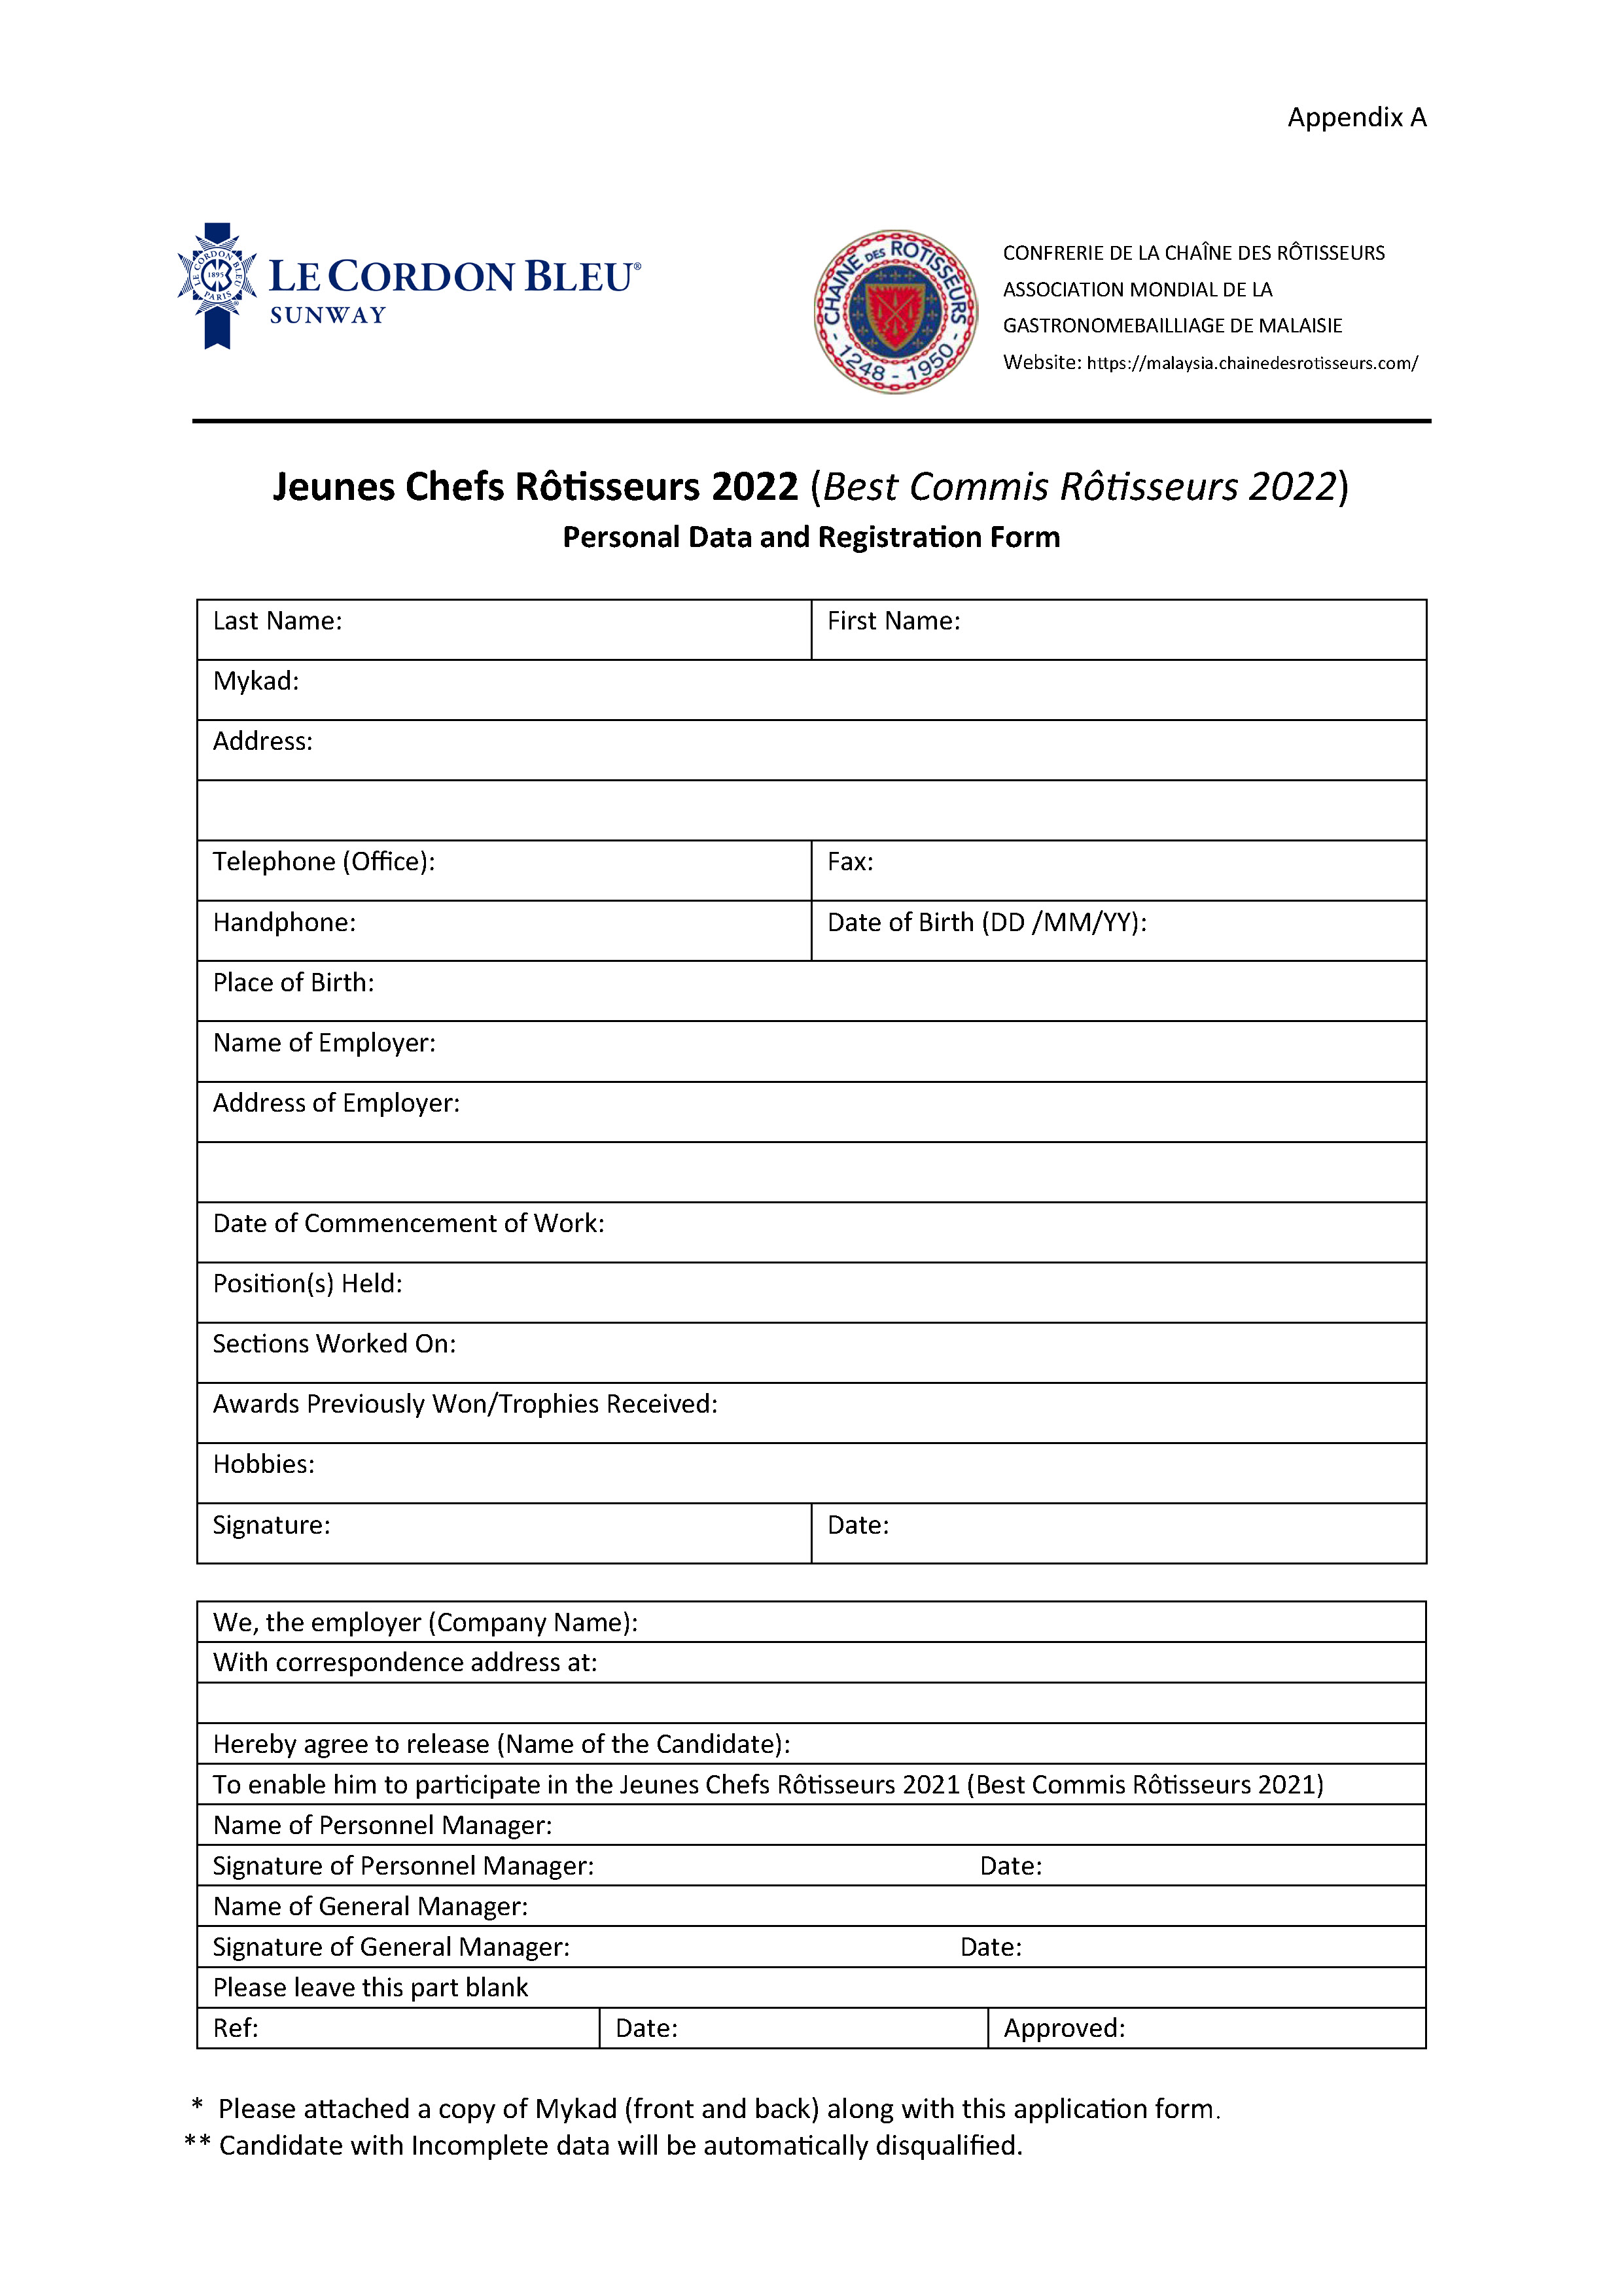 Jeunes Chefs Rotisseurs 2022 Application Form